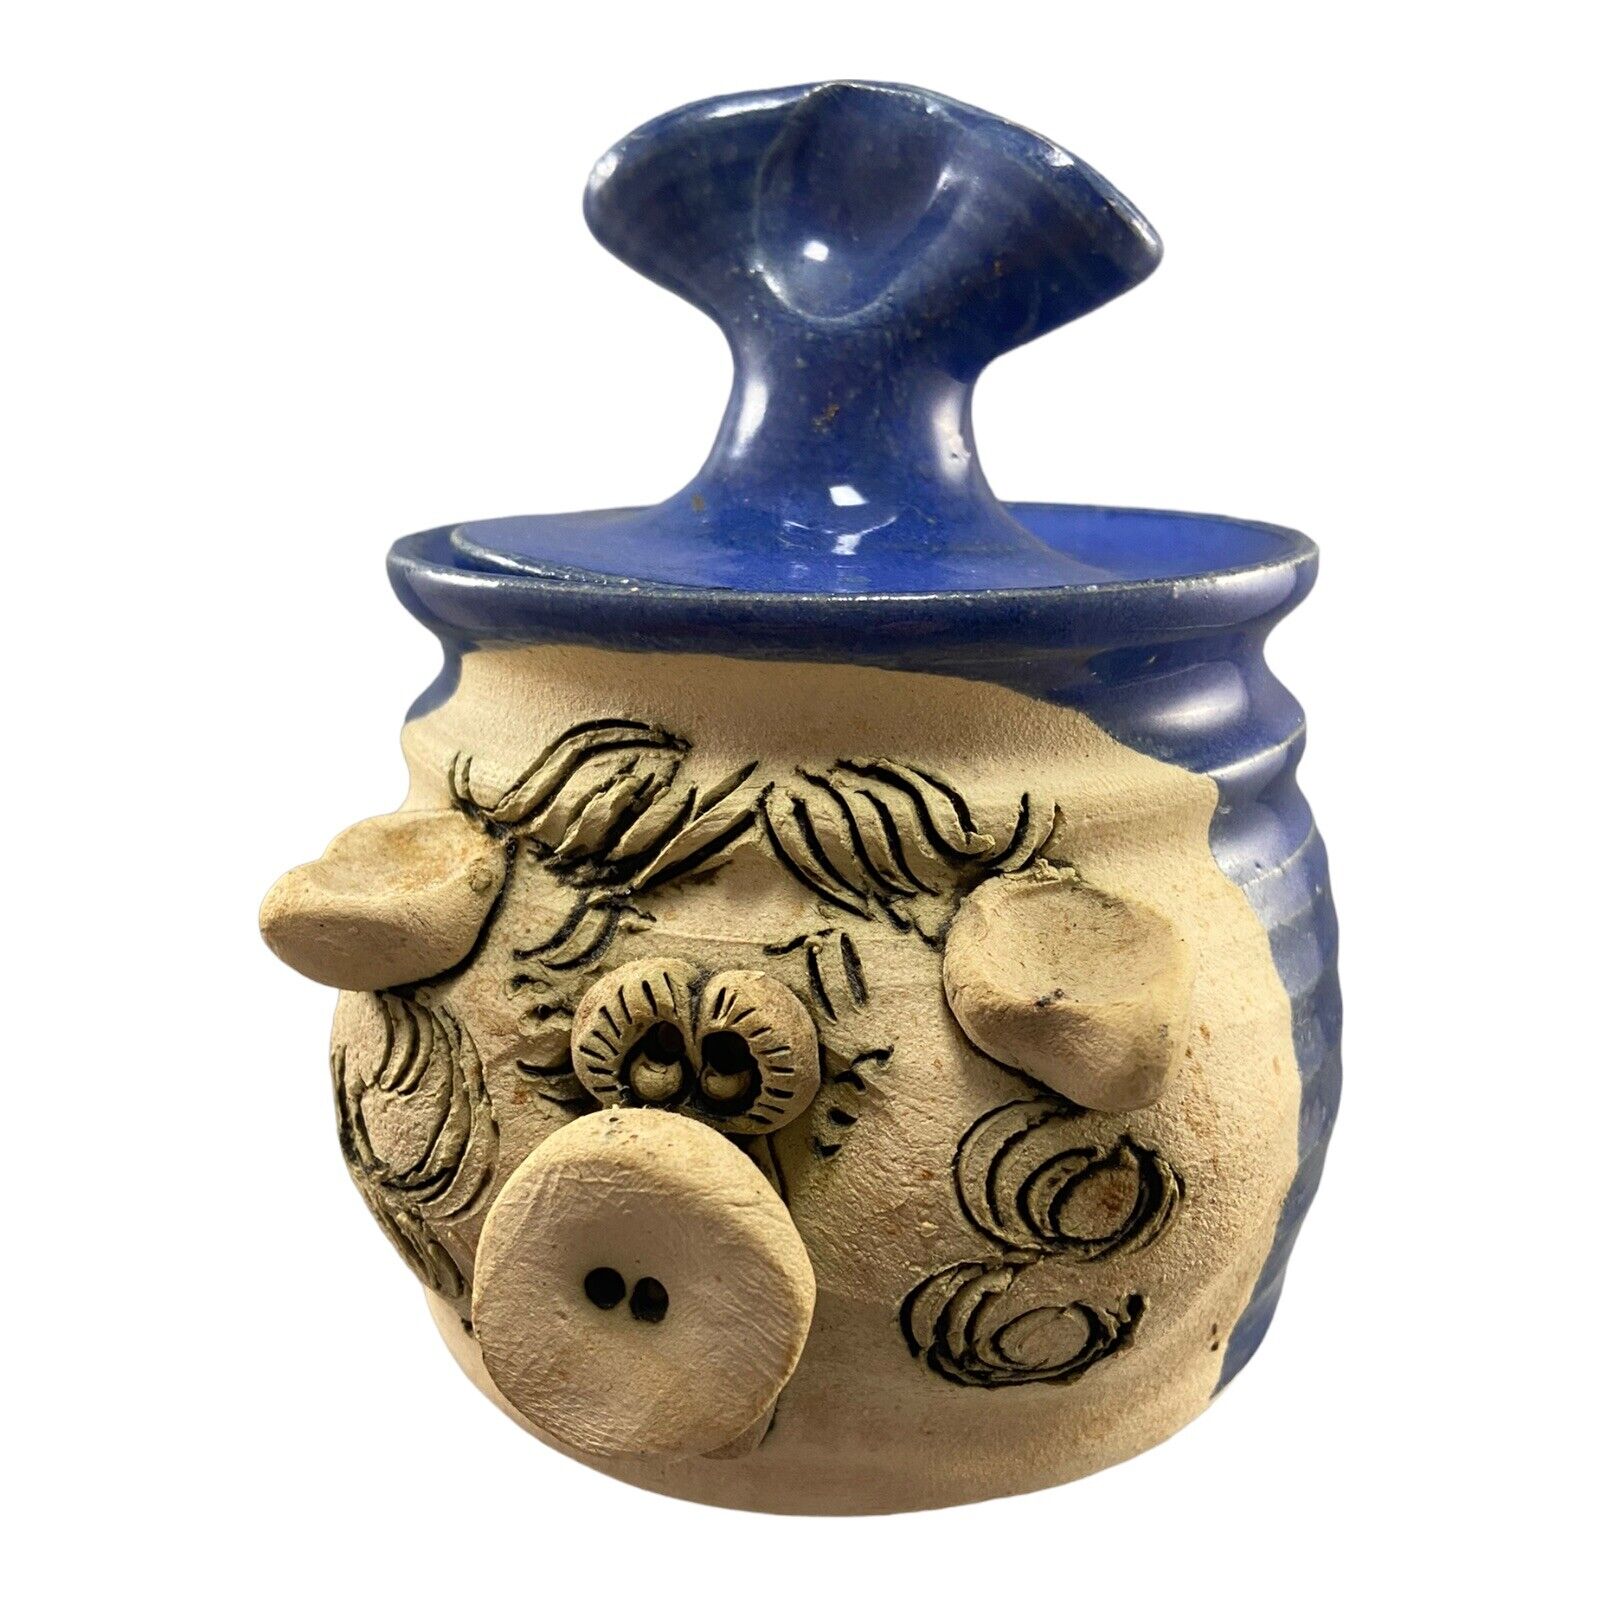 Art Pottery Ceramic Pig Swine Trinket Box Jar Cobalt Blue Beige Black Signed